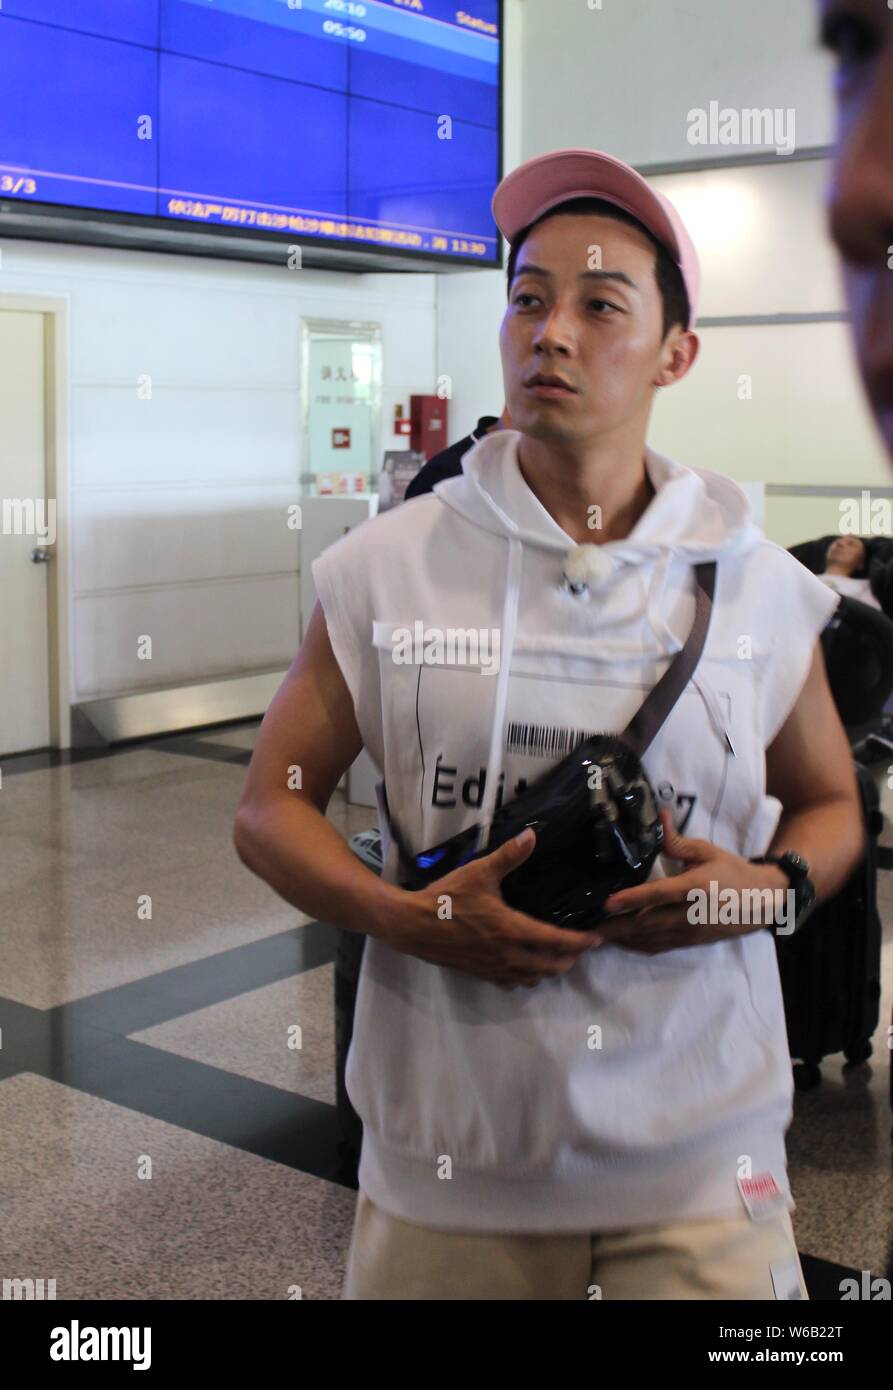 South Korean comedian Heo Kyung-hwan arrives at the Xiamen Gaoqi International Airport in Xiamen city, southeast China's Fujian province, 29 June 2018 Stock Photo